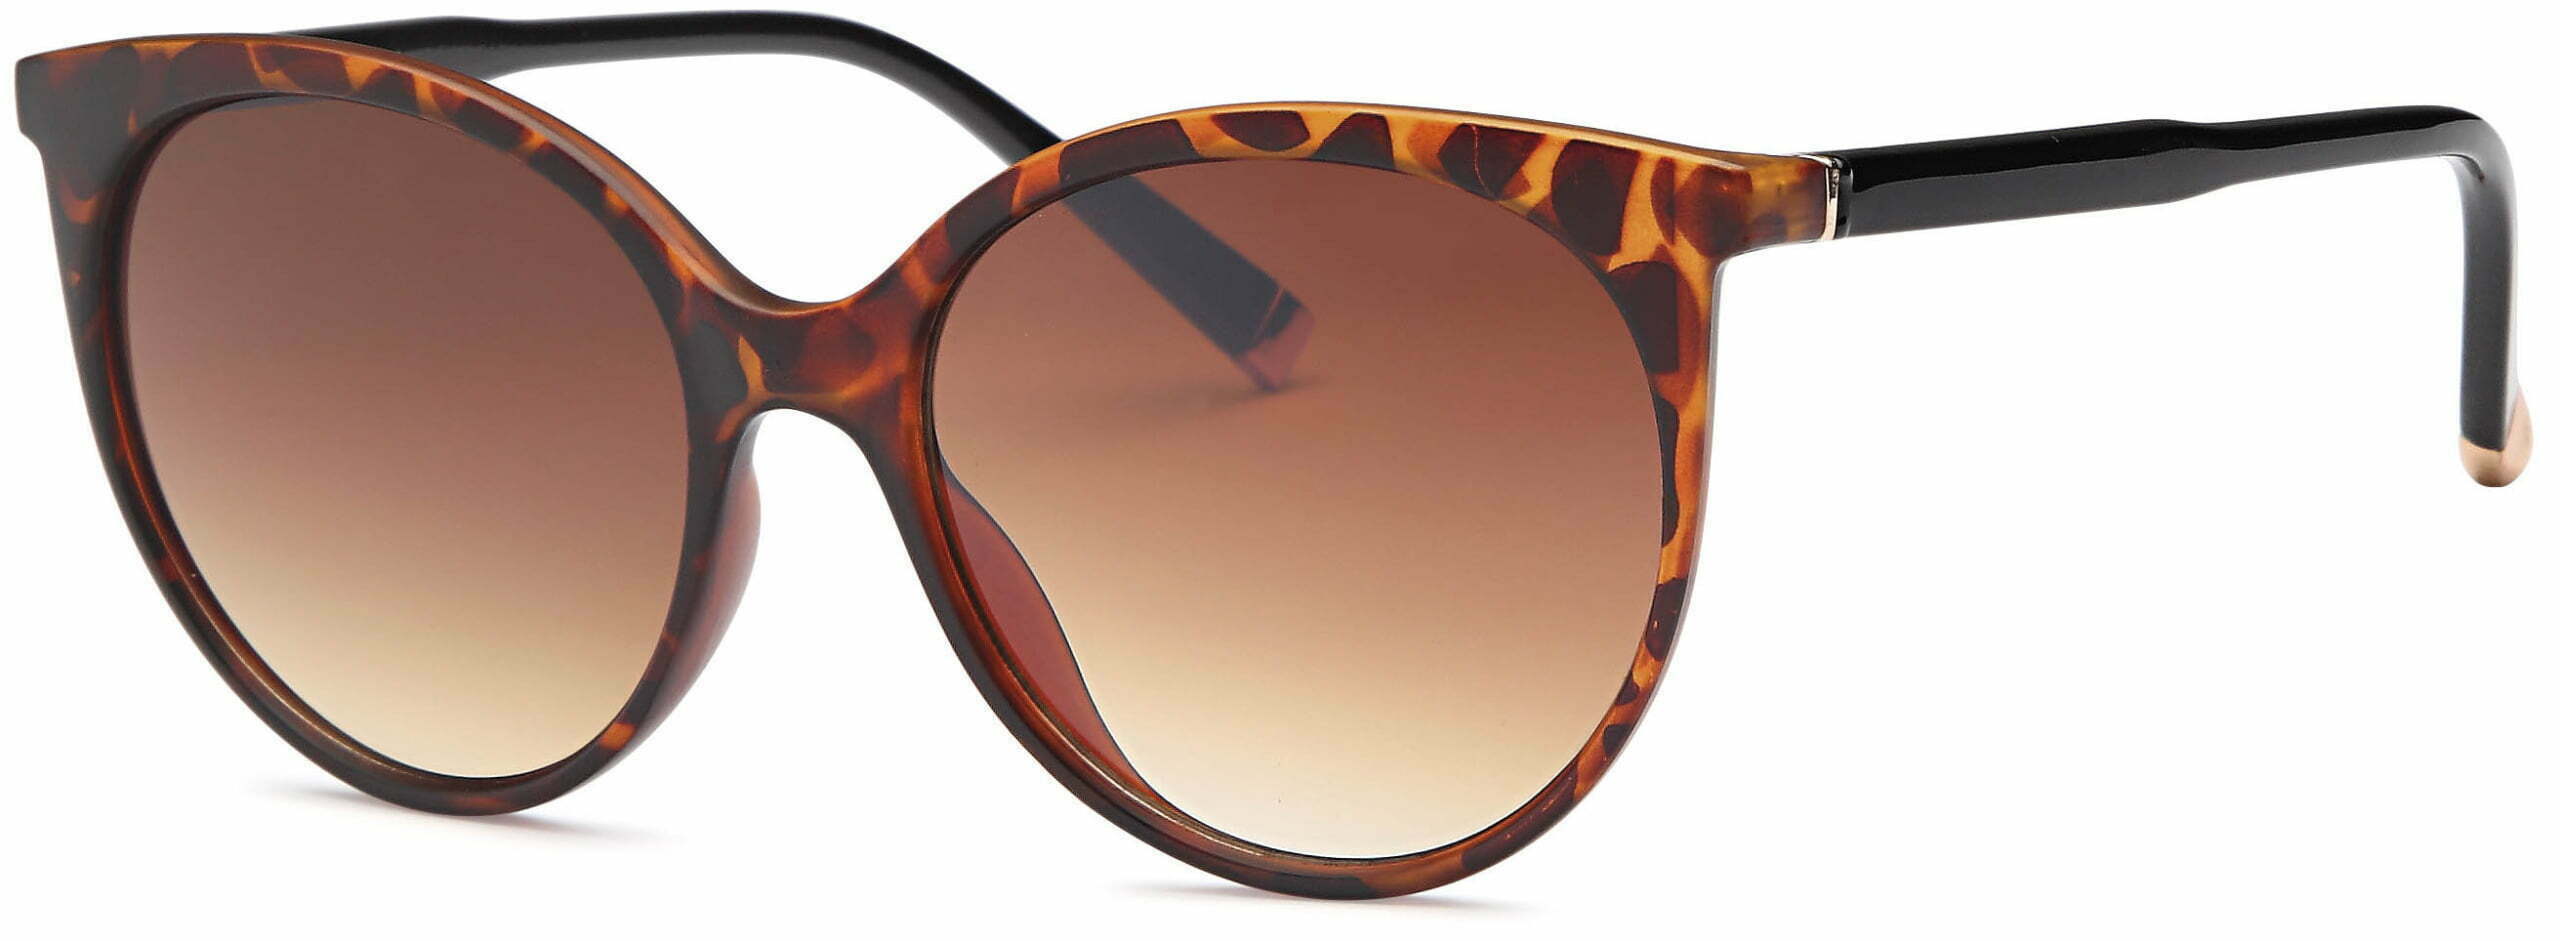 Fashion Wholesale Sunglasses - SH6718 ⋆ West Coast Sunglasses Inc.